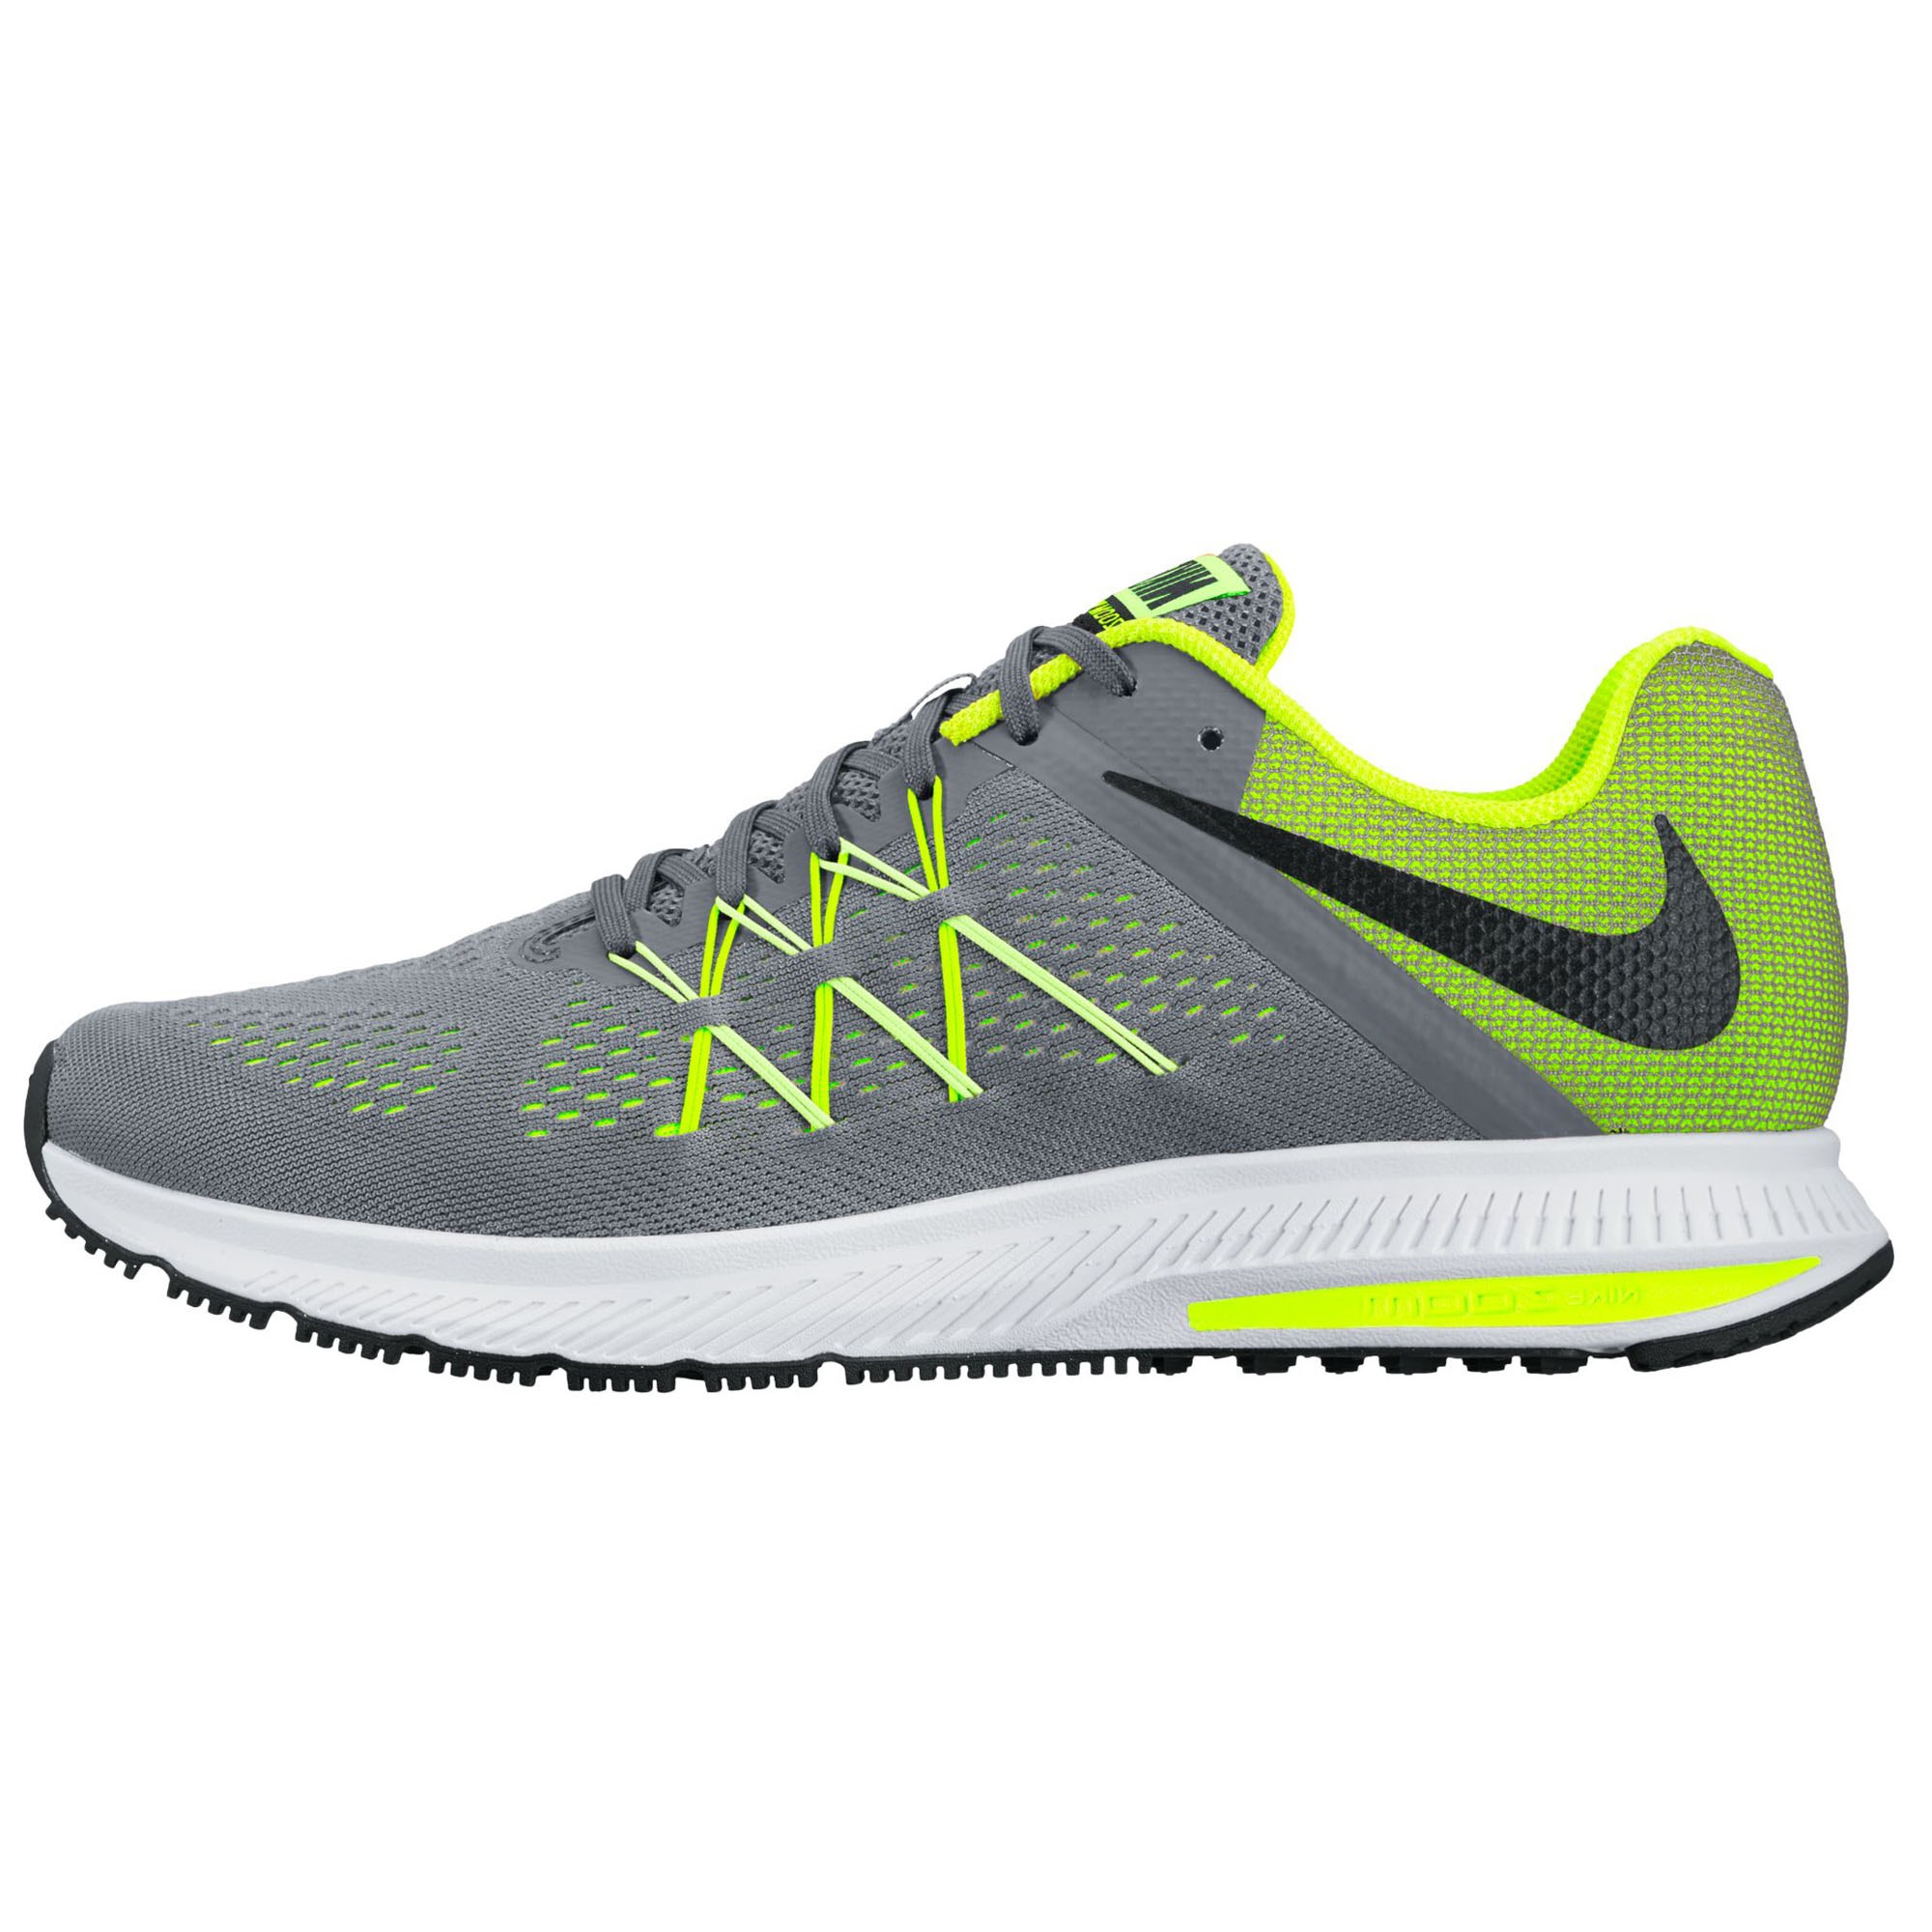 Nike Zoom Winflo 3 Erkek Koşu Ayakkabısı 831561-014 | Etichet Sport